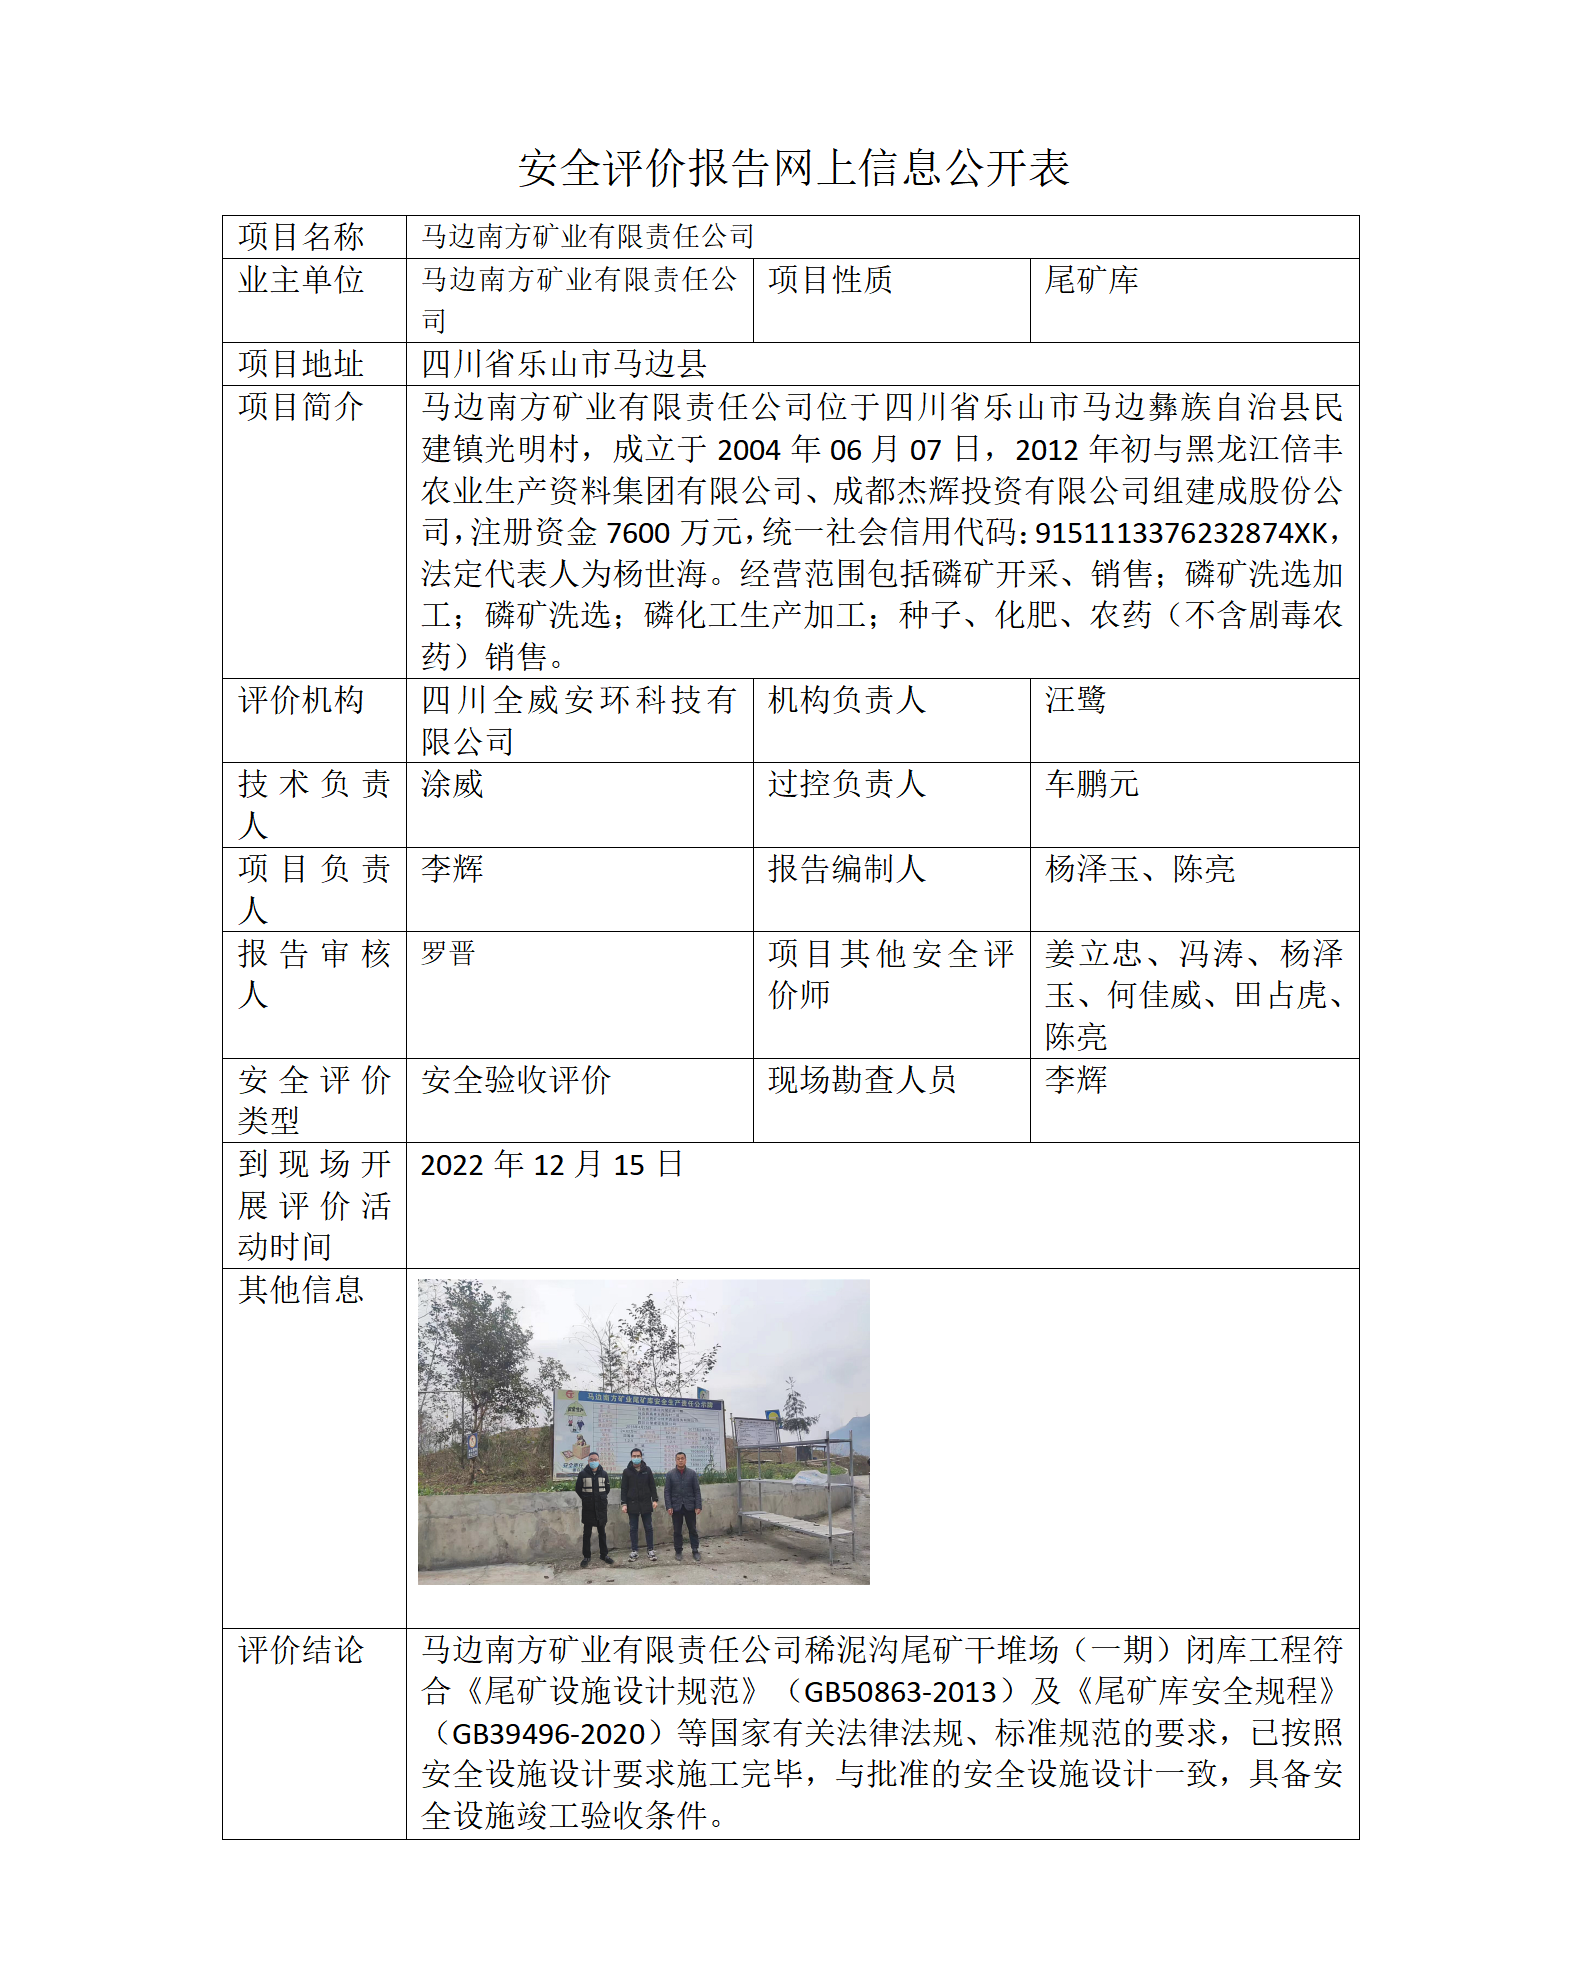 马边南方矿业有限责任公司稀泥沟尾矿干堆场（一期）闭库工程安全验收评价